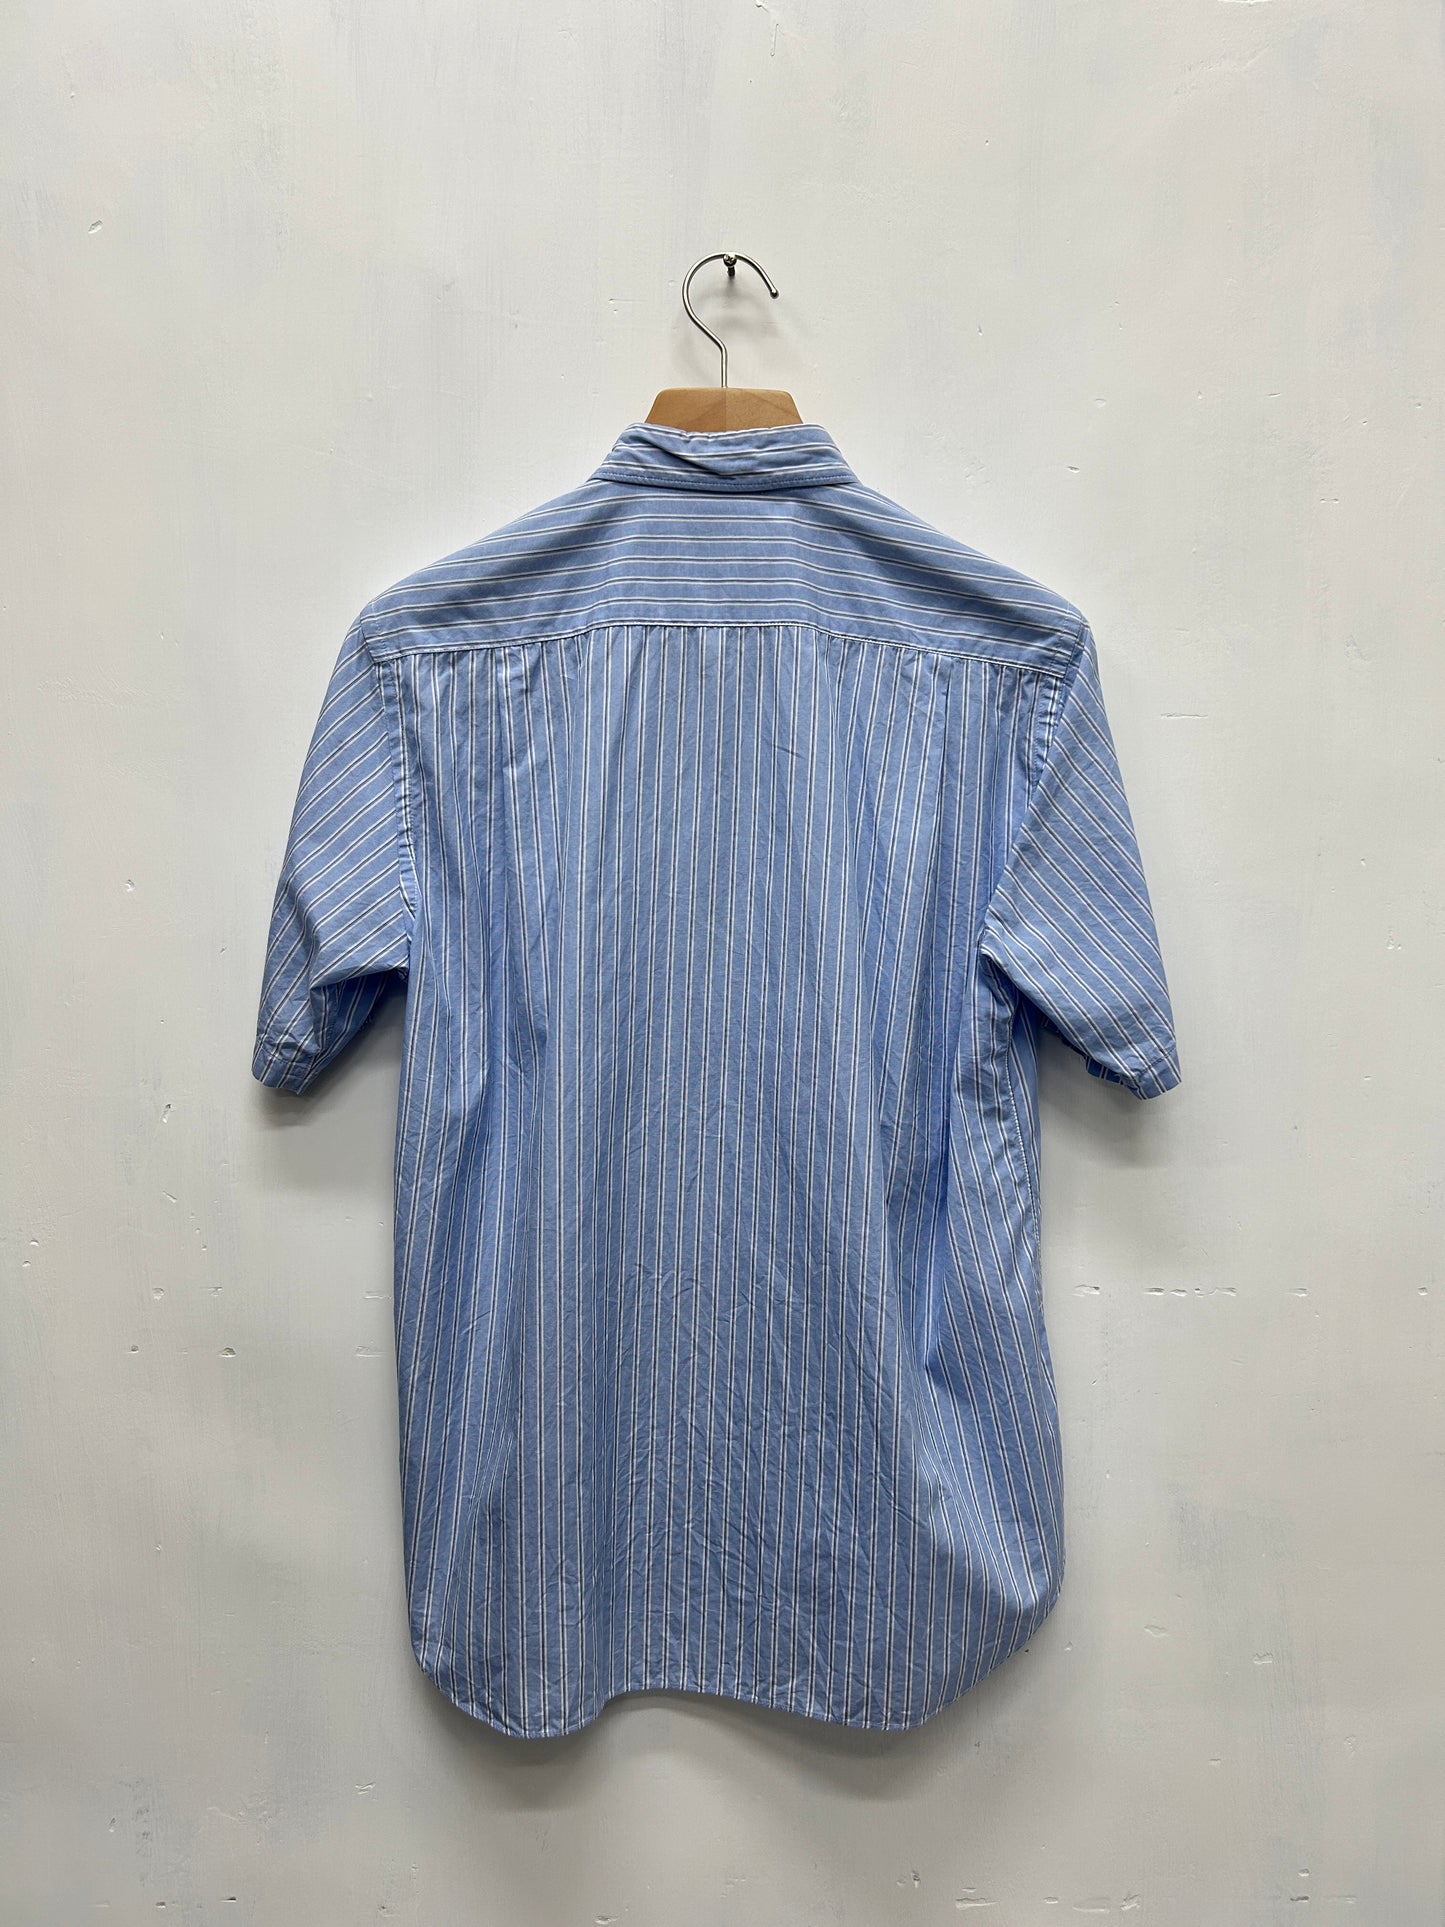 Comme Des Garcons Homme SS2007 Patch Stripe Shirt-Size S